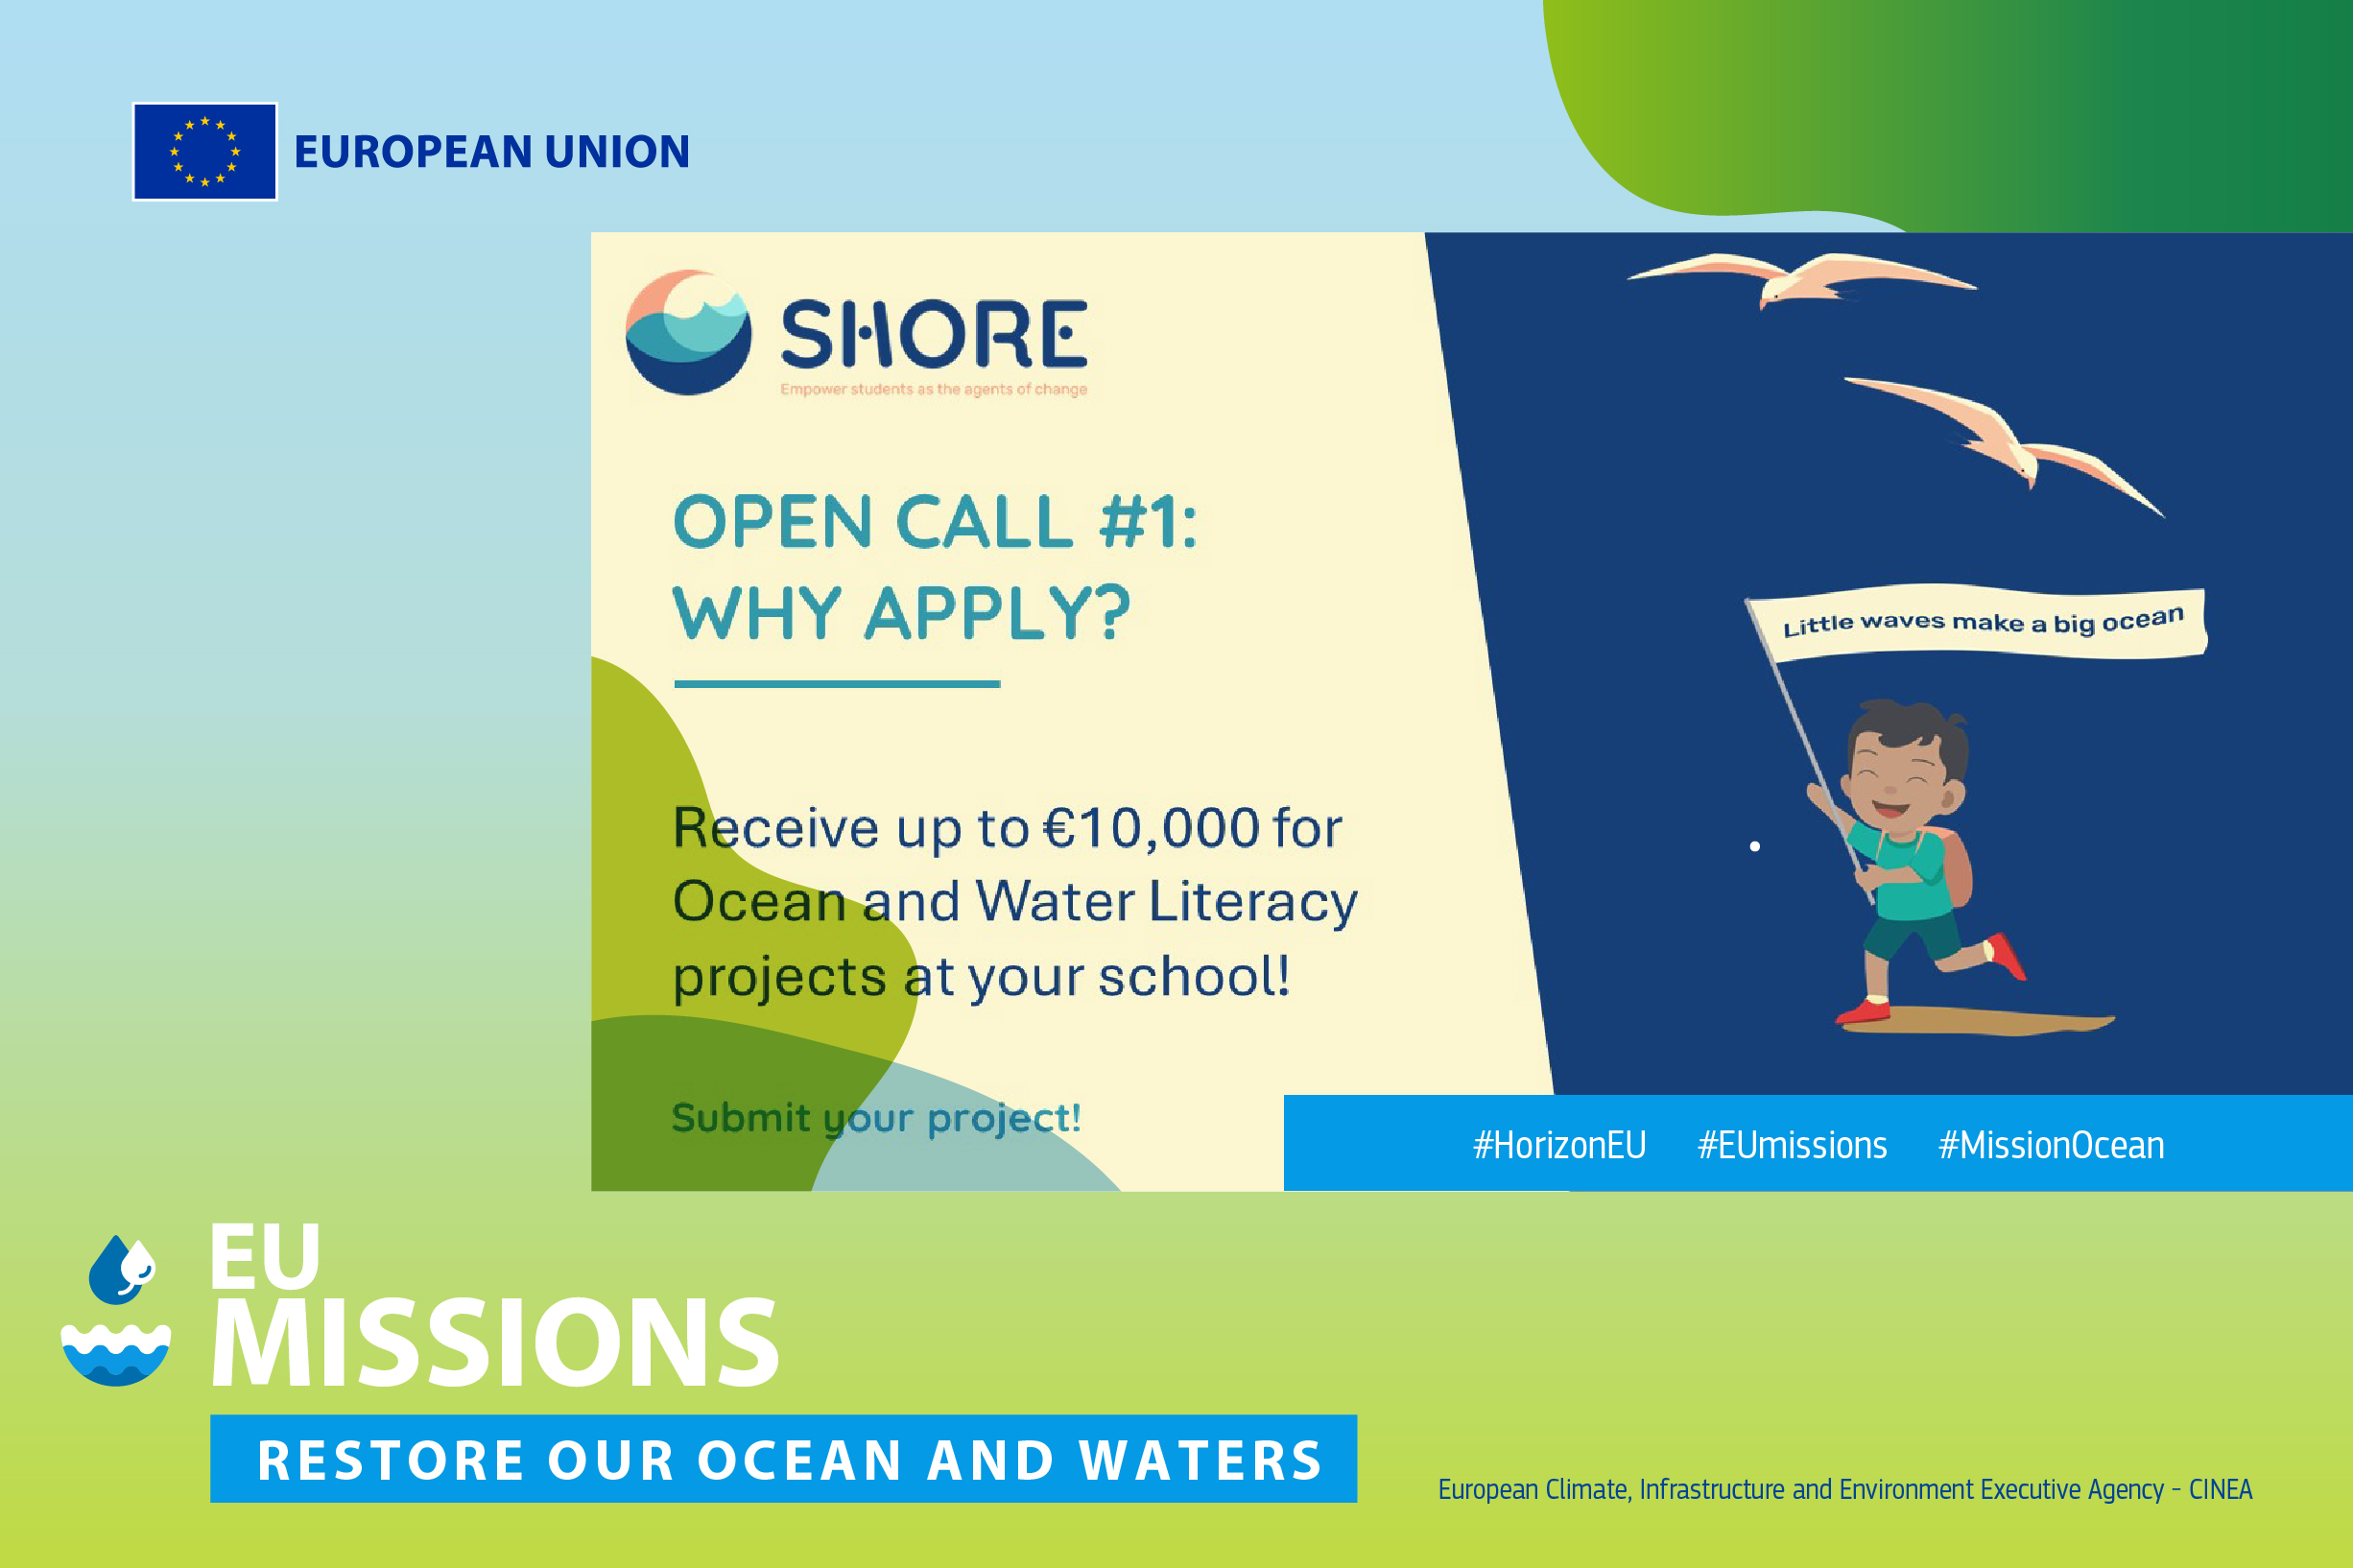 Ανοιχτή πρόσκληση του έργου SHORE με διαθέσιμες επιχορηγήσεις για σχολεία που φτάνουν έως 10.000 €